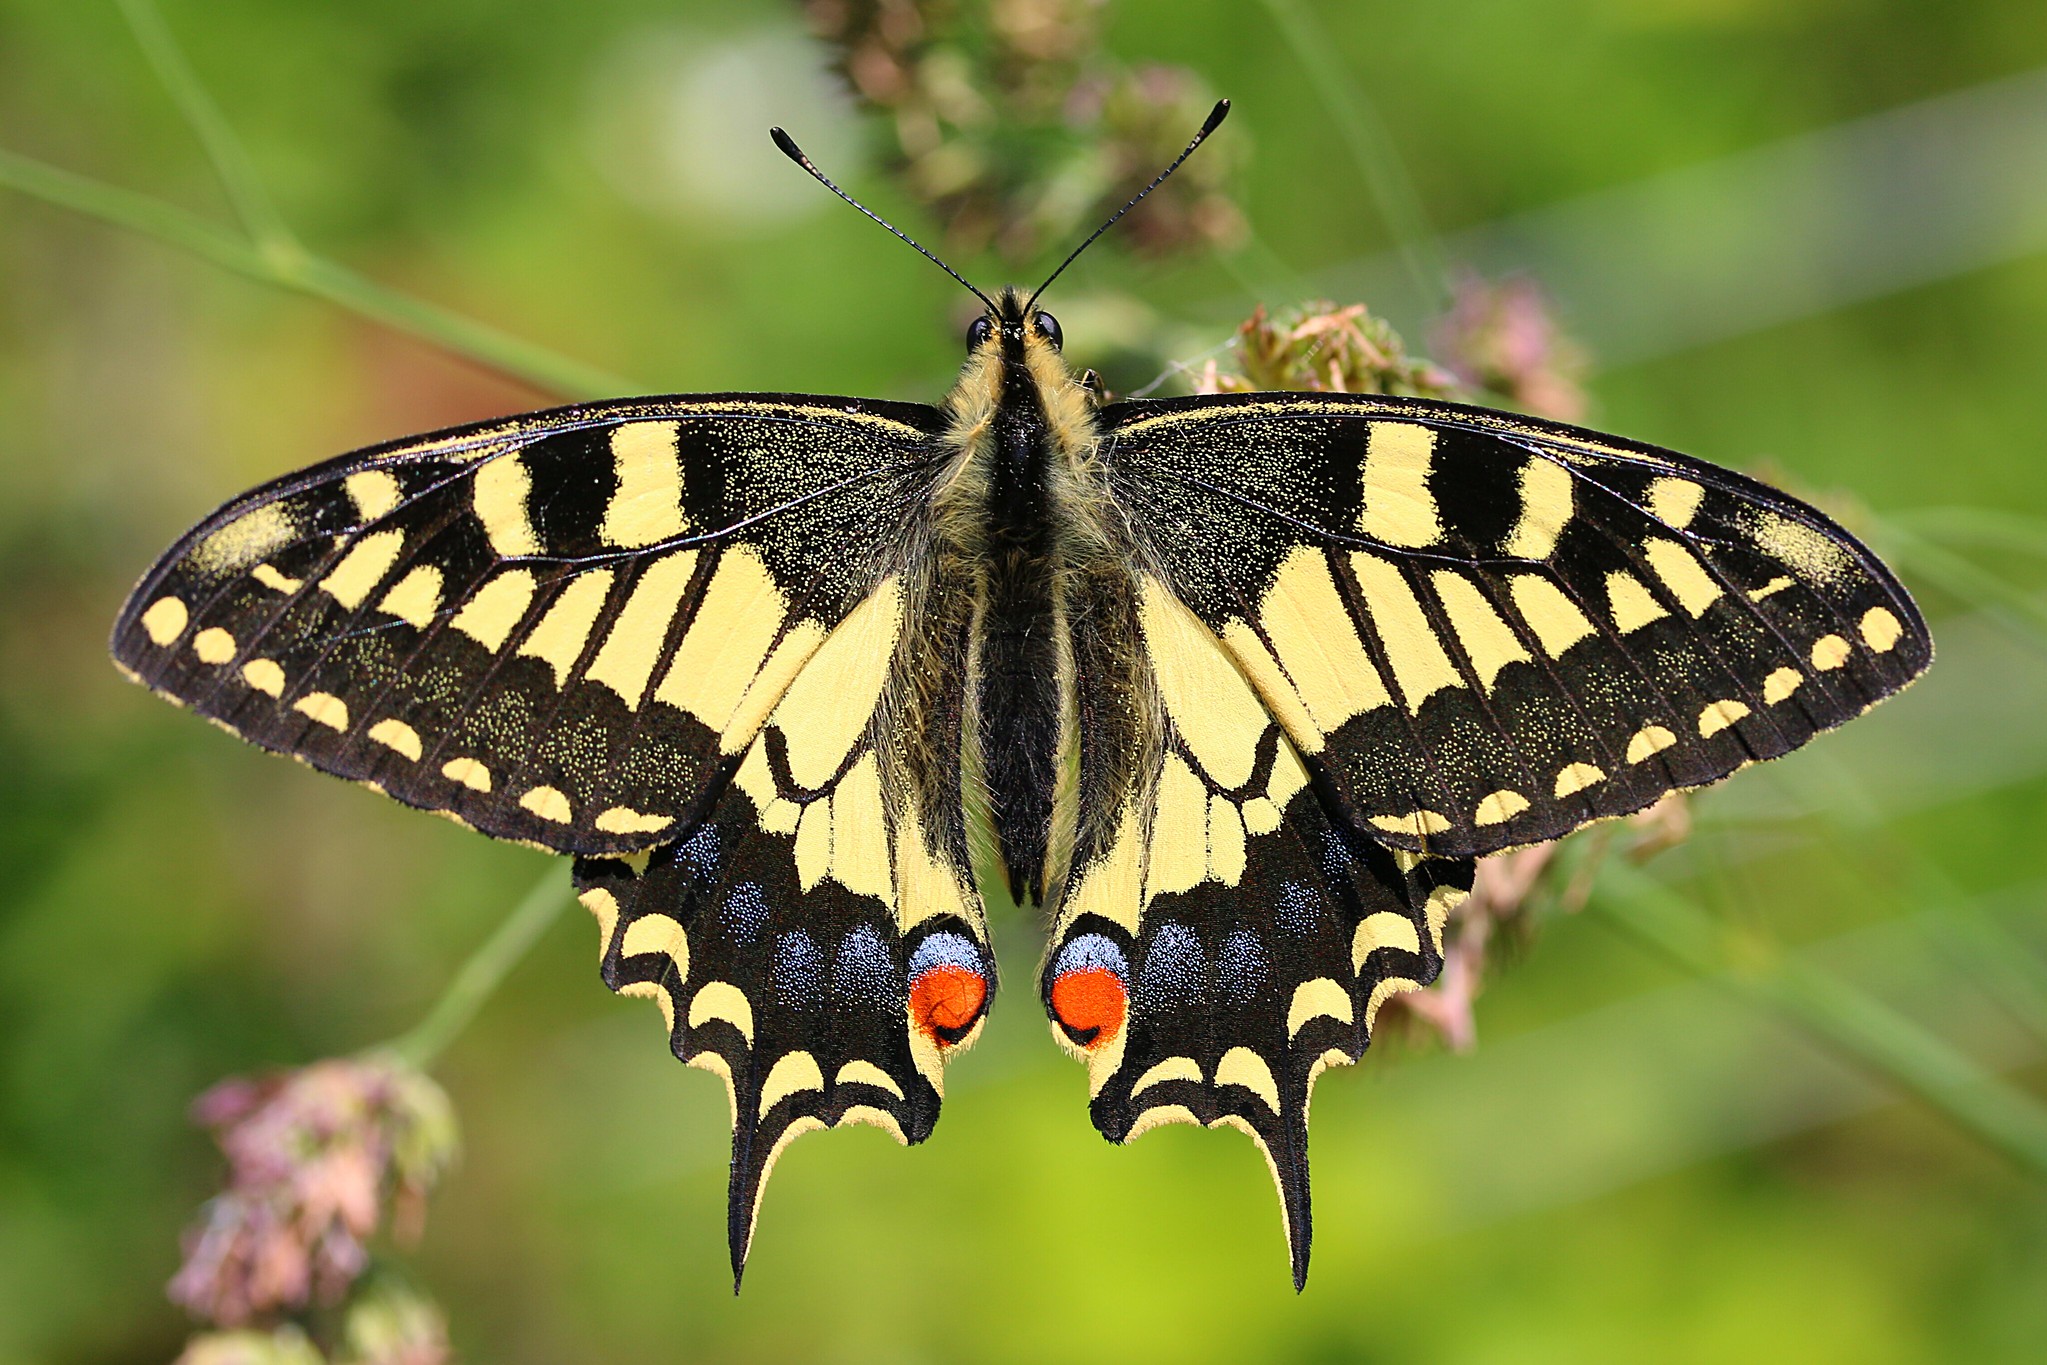 La mariposa macaón (Papilio machaon) al ser molestada, repentinamente extiende sus alas y aletea para alejar a aves depredadoras.